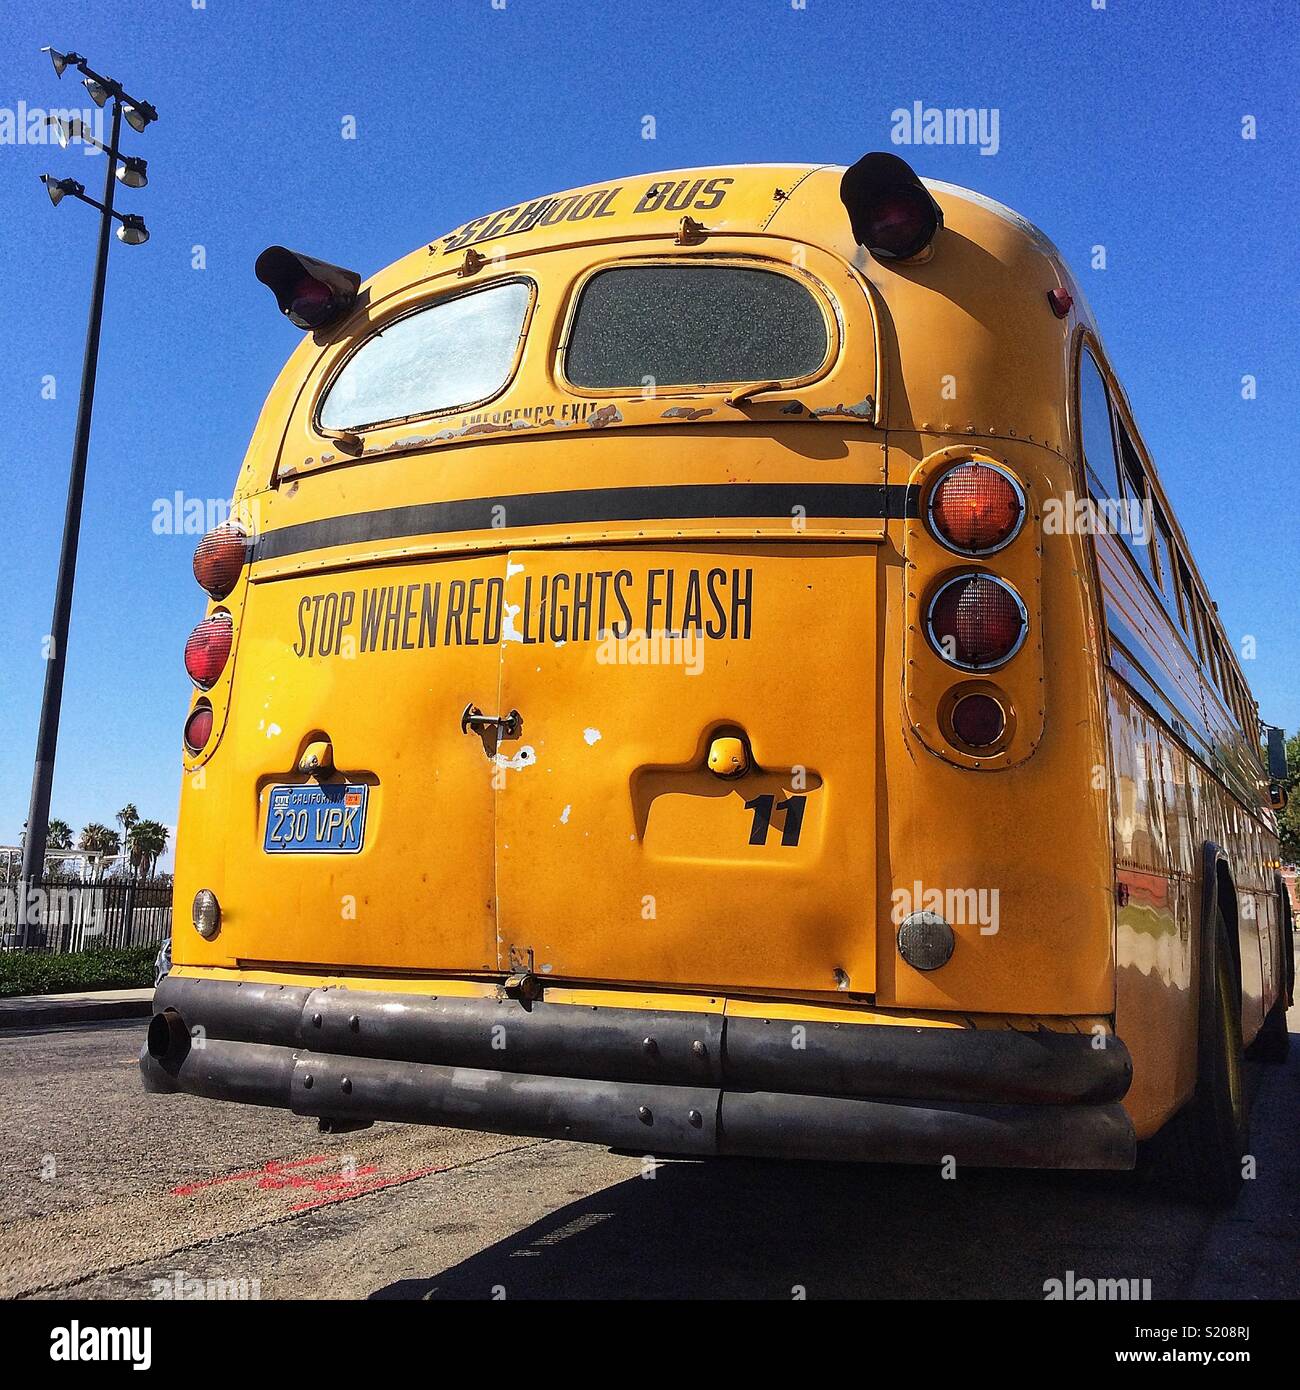 Giallo scuola bus, Los Angeles, California, Stati Uniti d'America Foto Stock